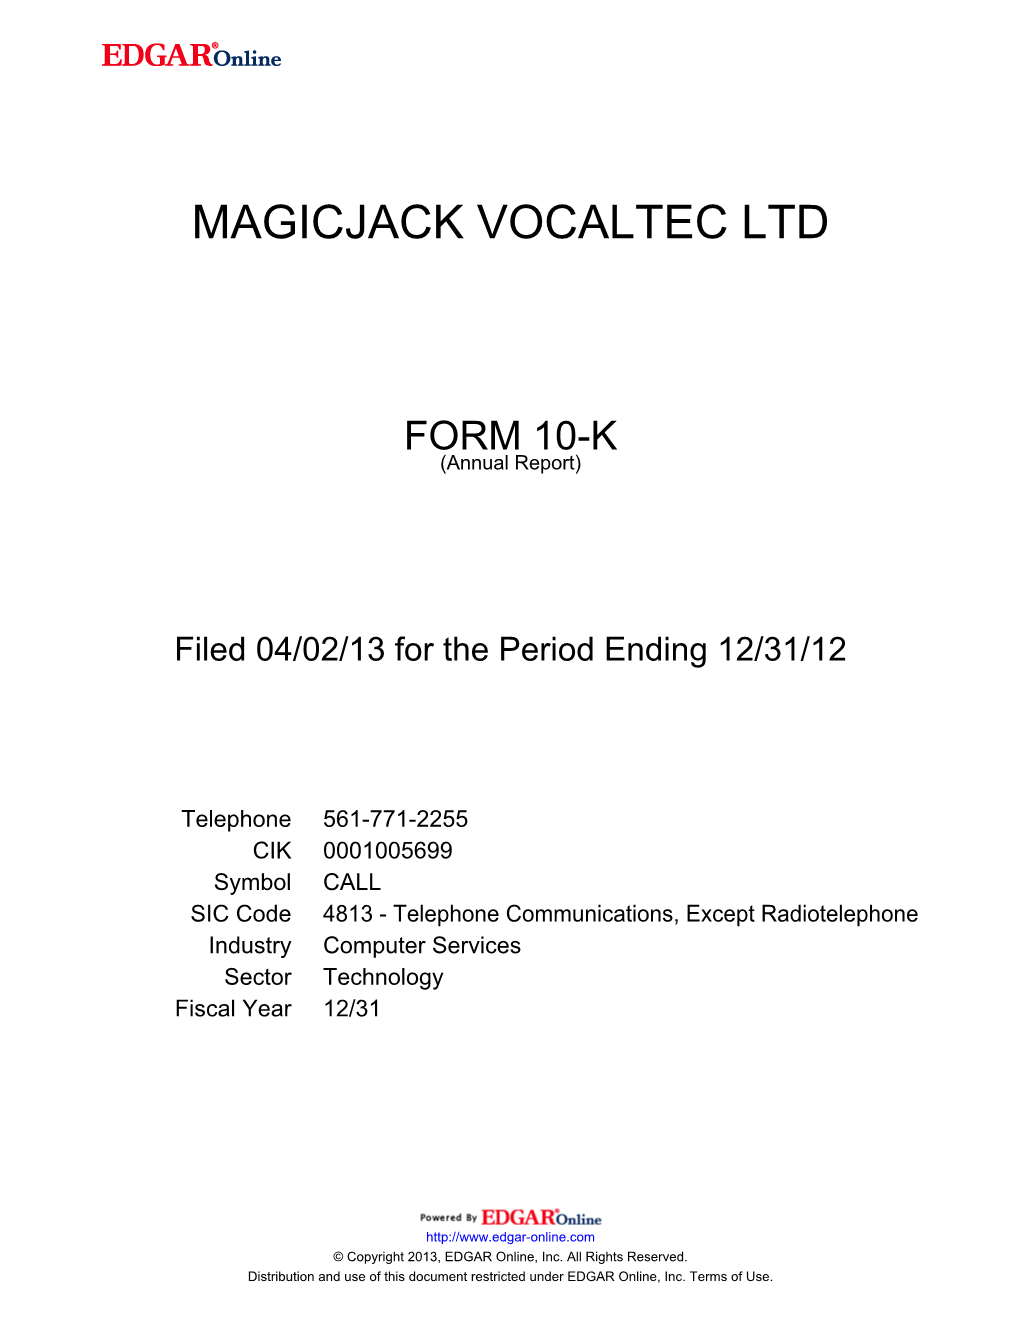 Magicjack Vocaltec Ltd